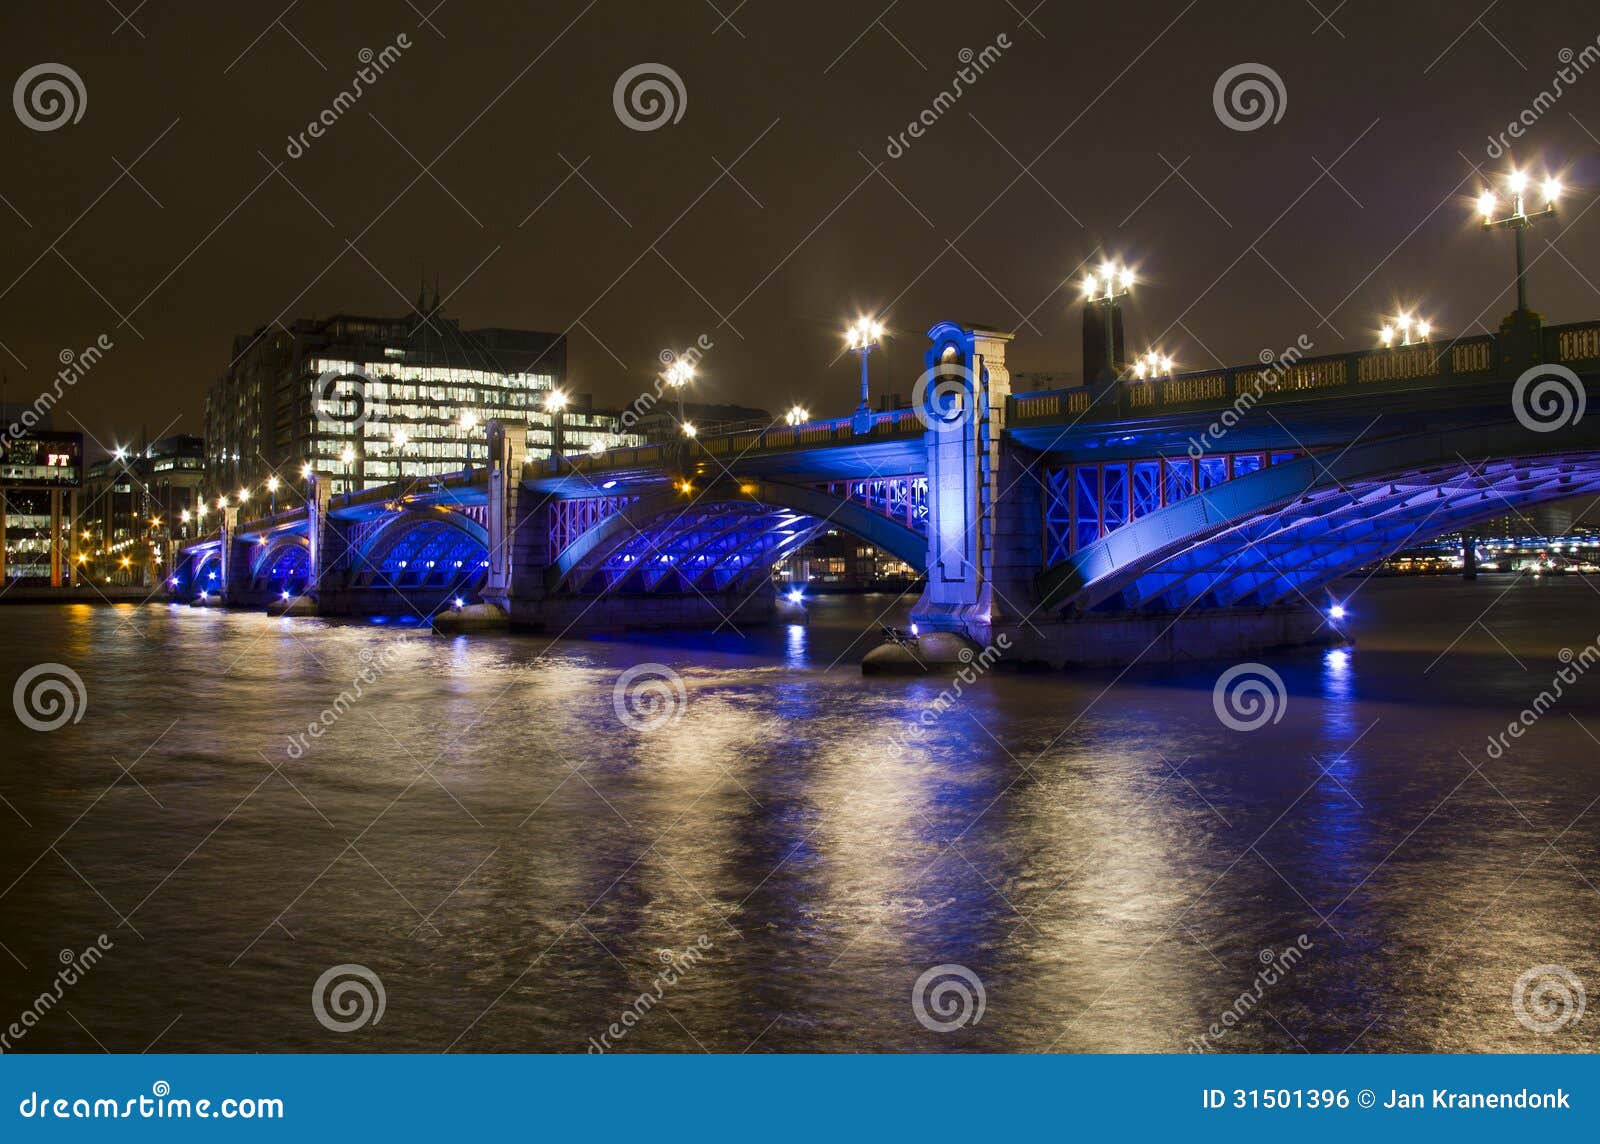 southwark bridge in london